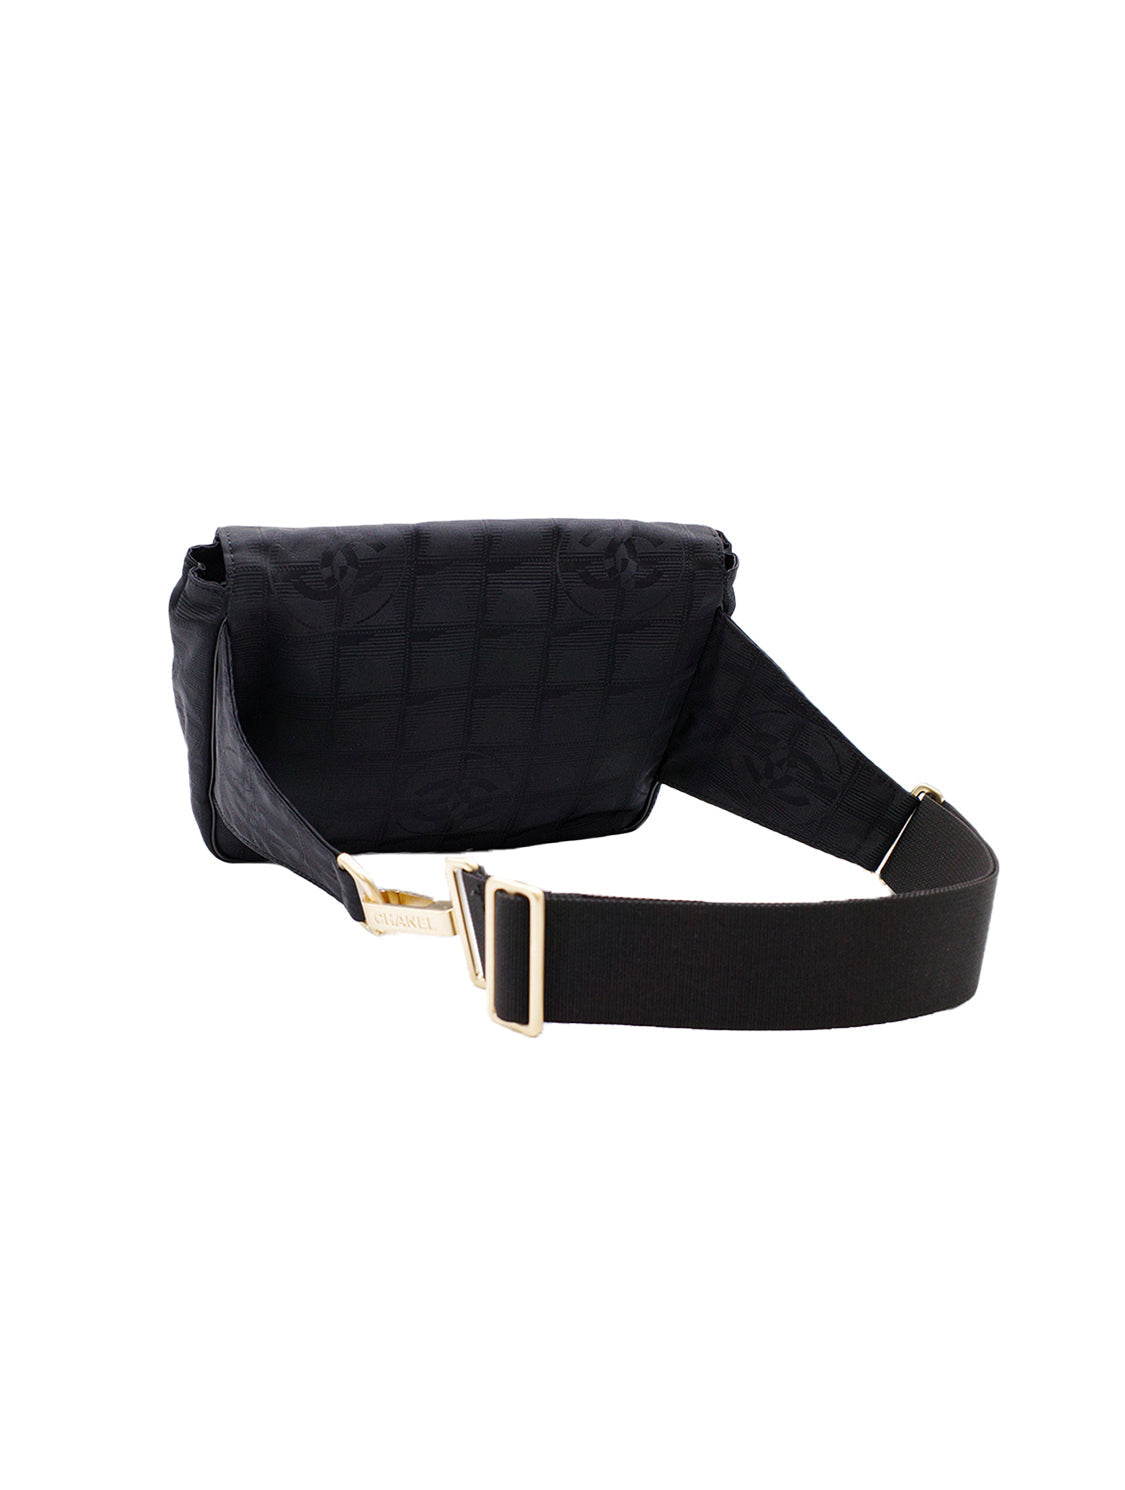 Chanel Nylon Waist Bag - 16 For Sale on 1stDibs